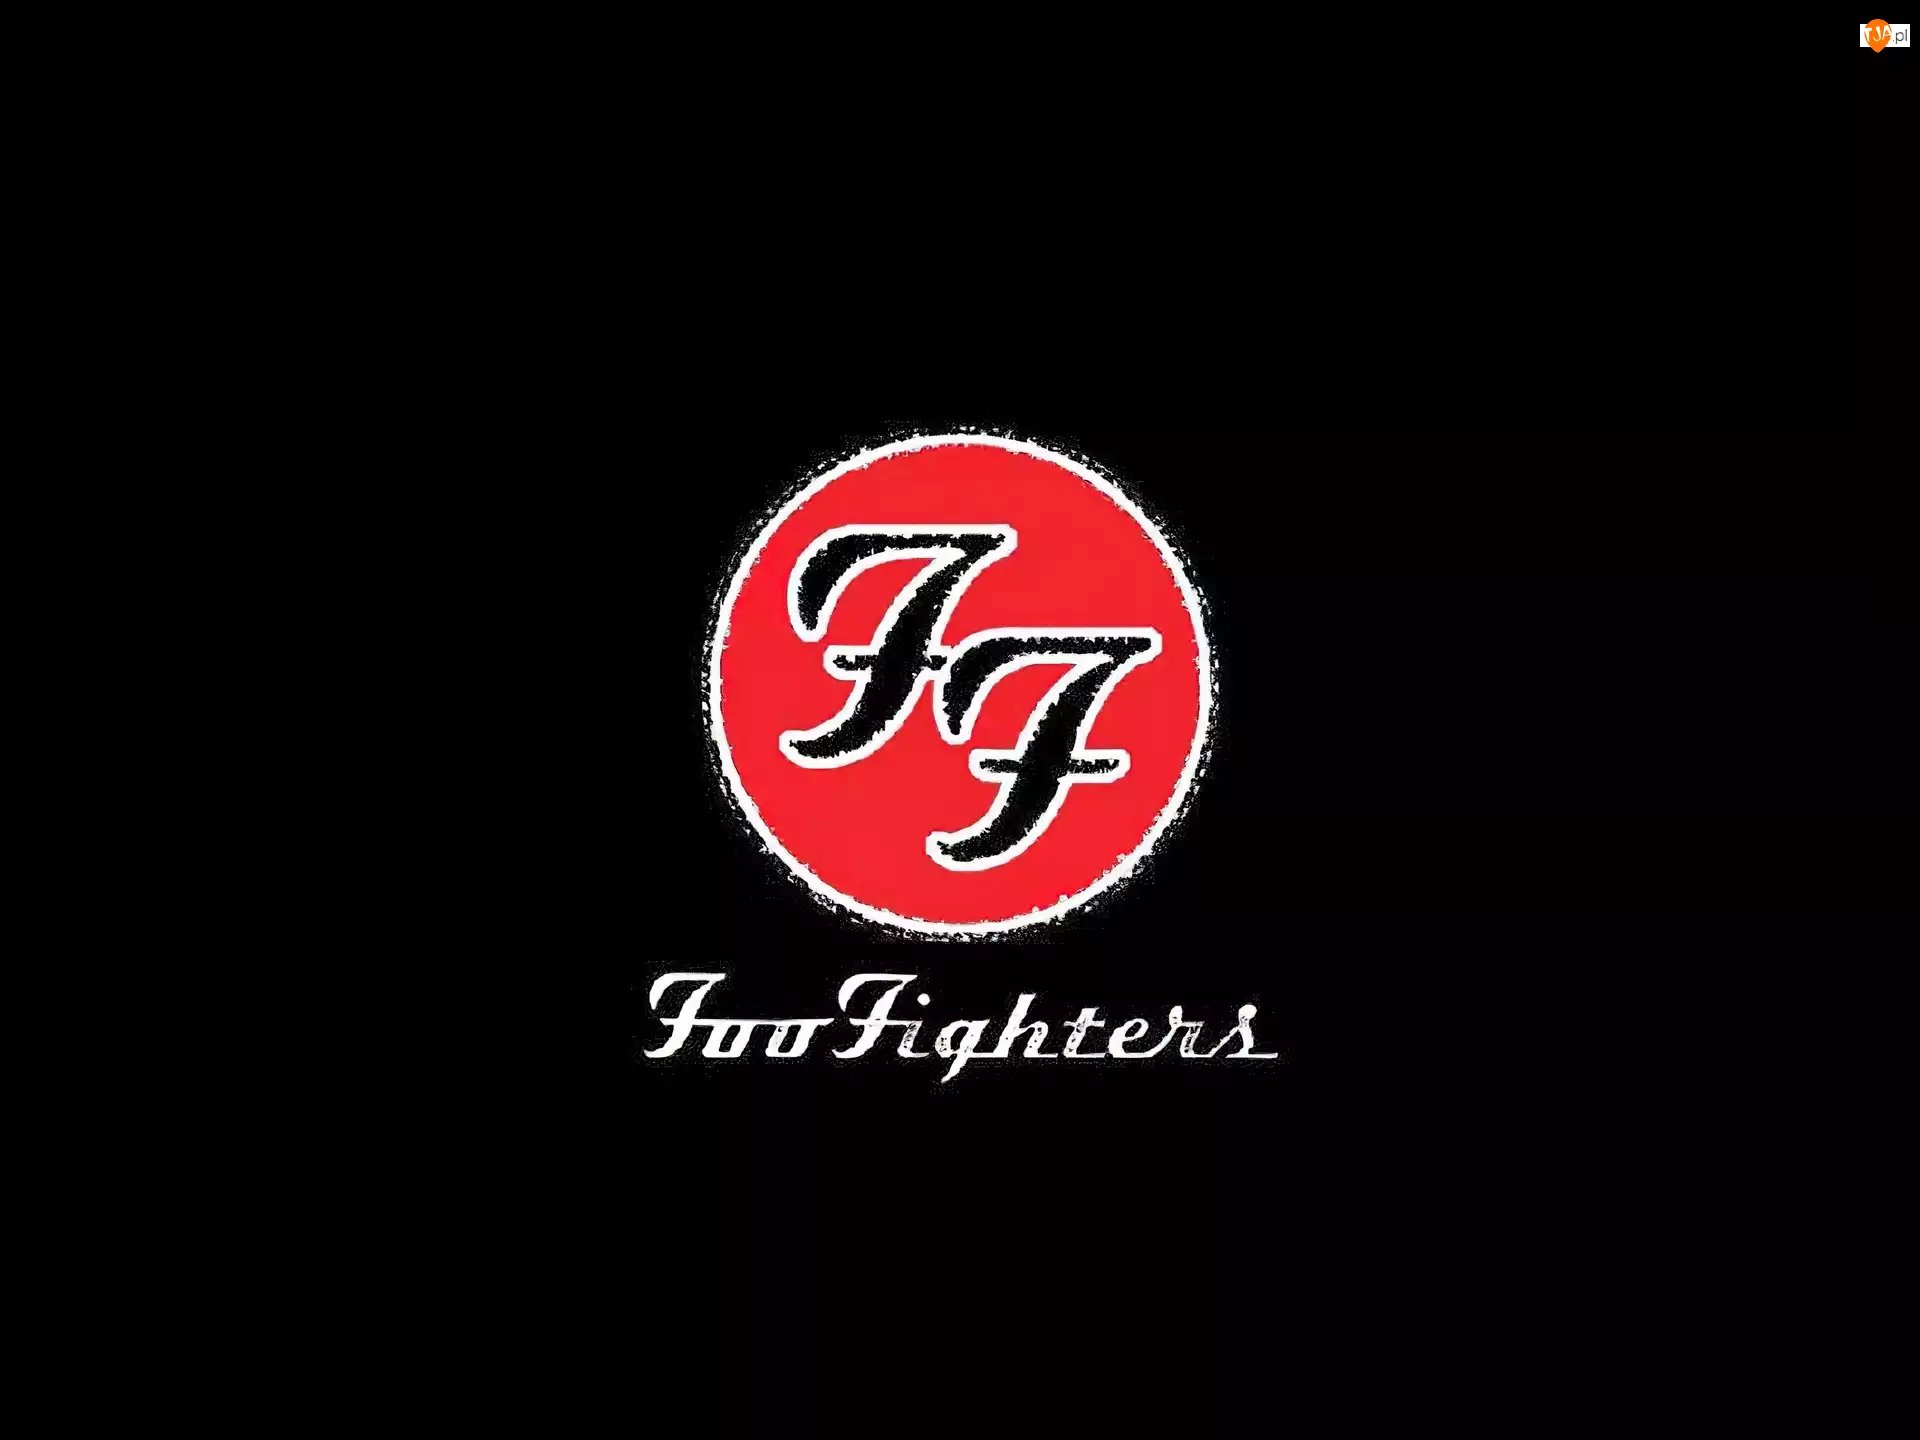 znaczek zespołu, Foo Fighters